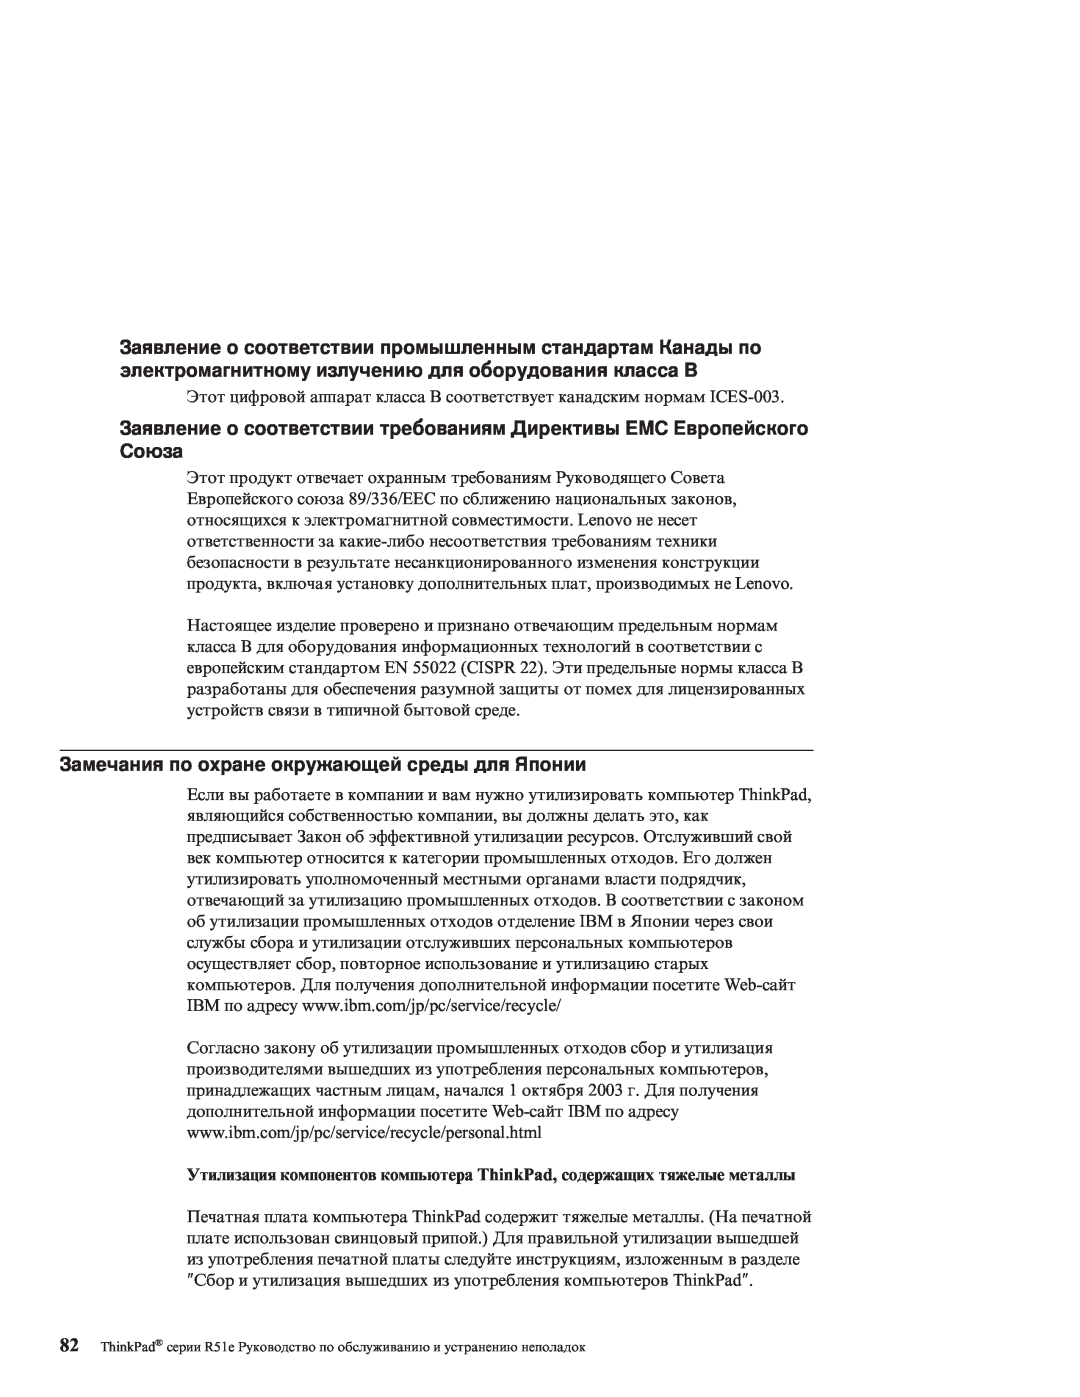 IBM R51E manual Заявление о соответствии требованиям Директивы EMC Европейского Союза 